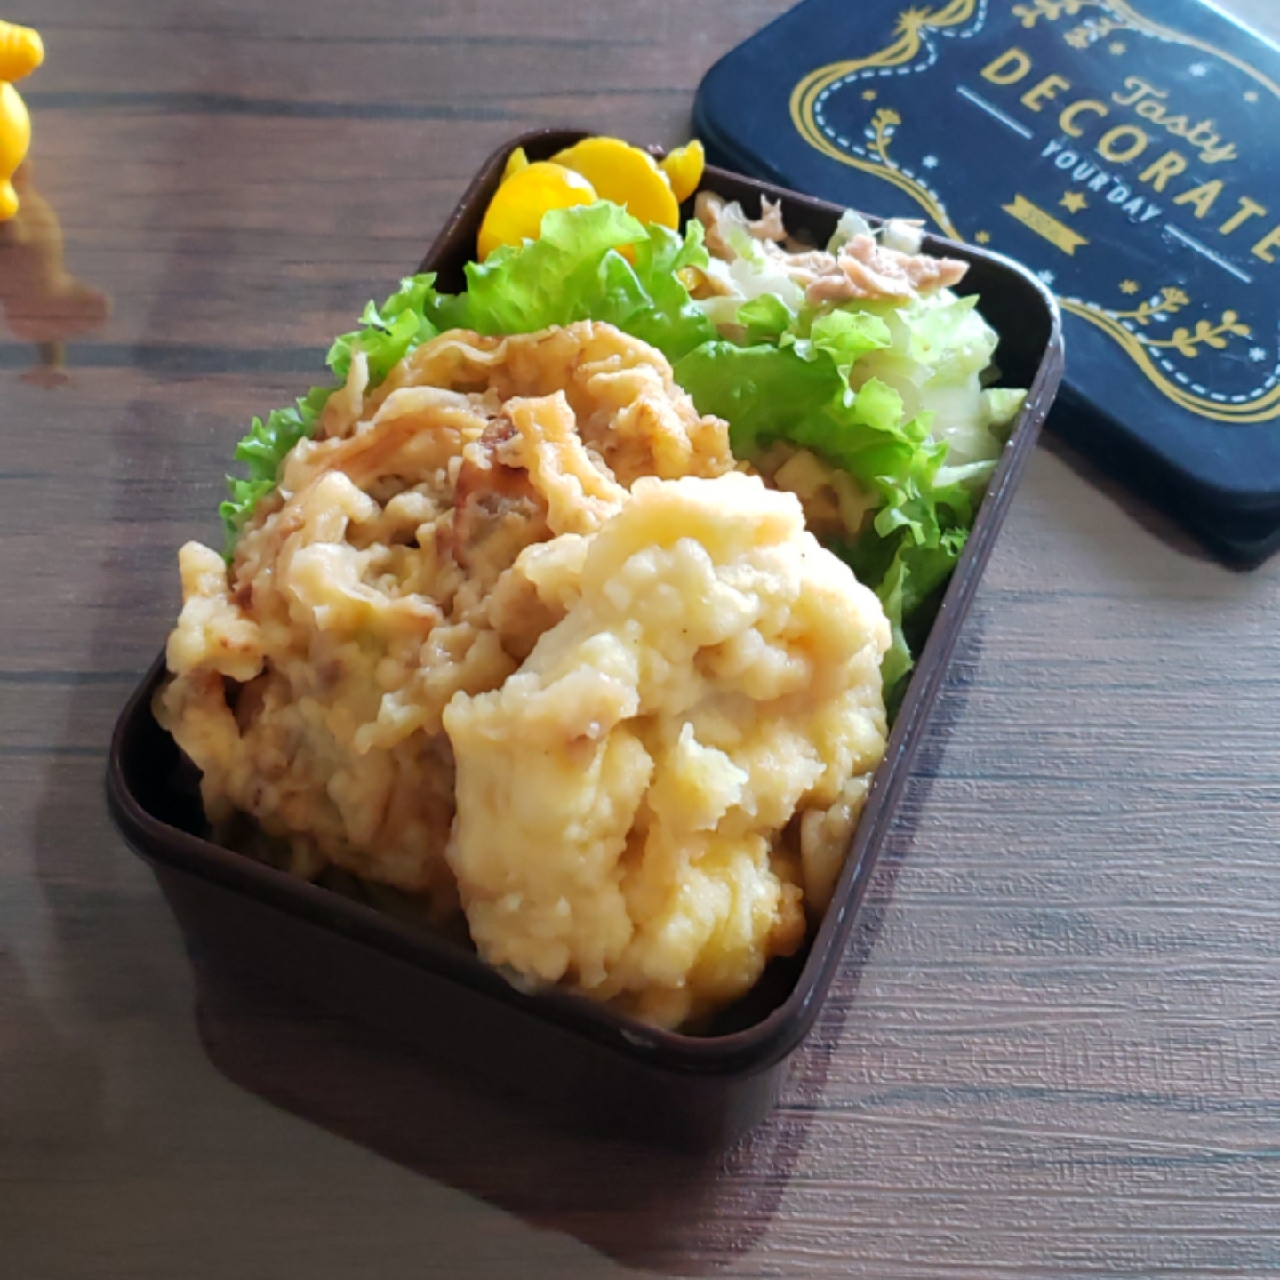 主婦の昼うち弁当
残った天ぷら…天丼弁当に…